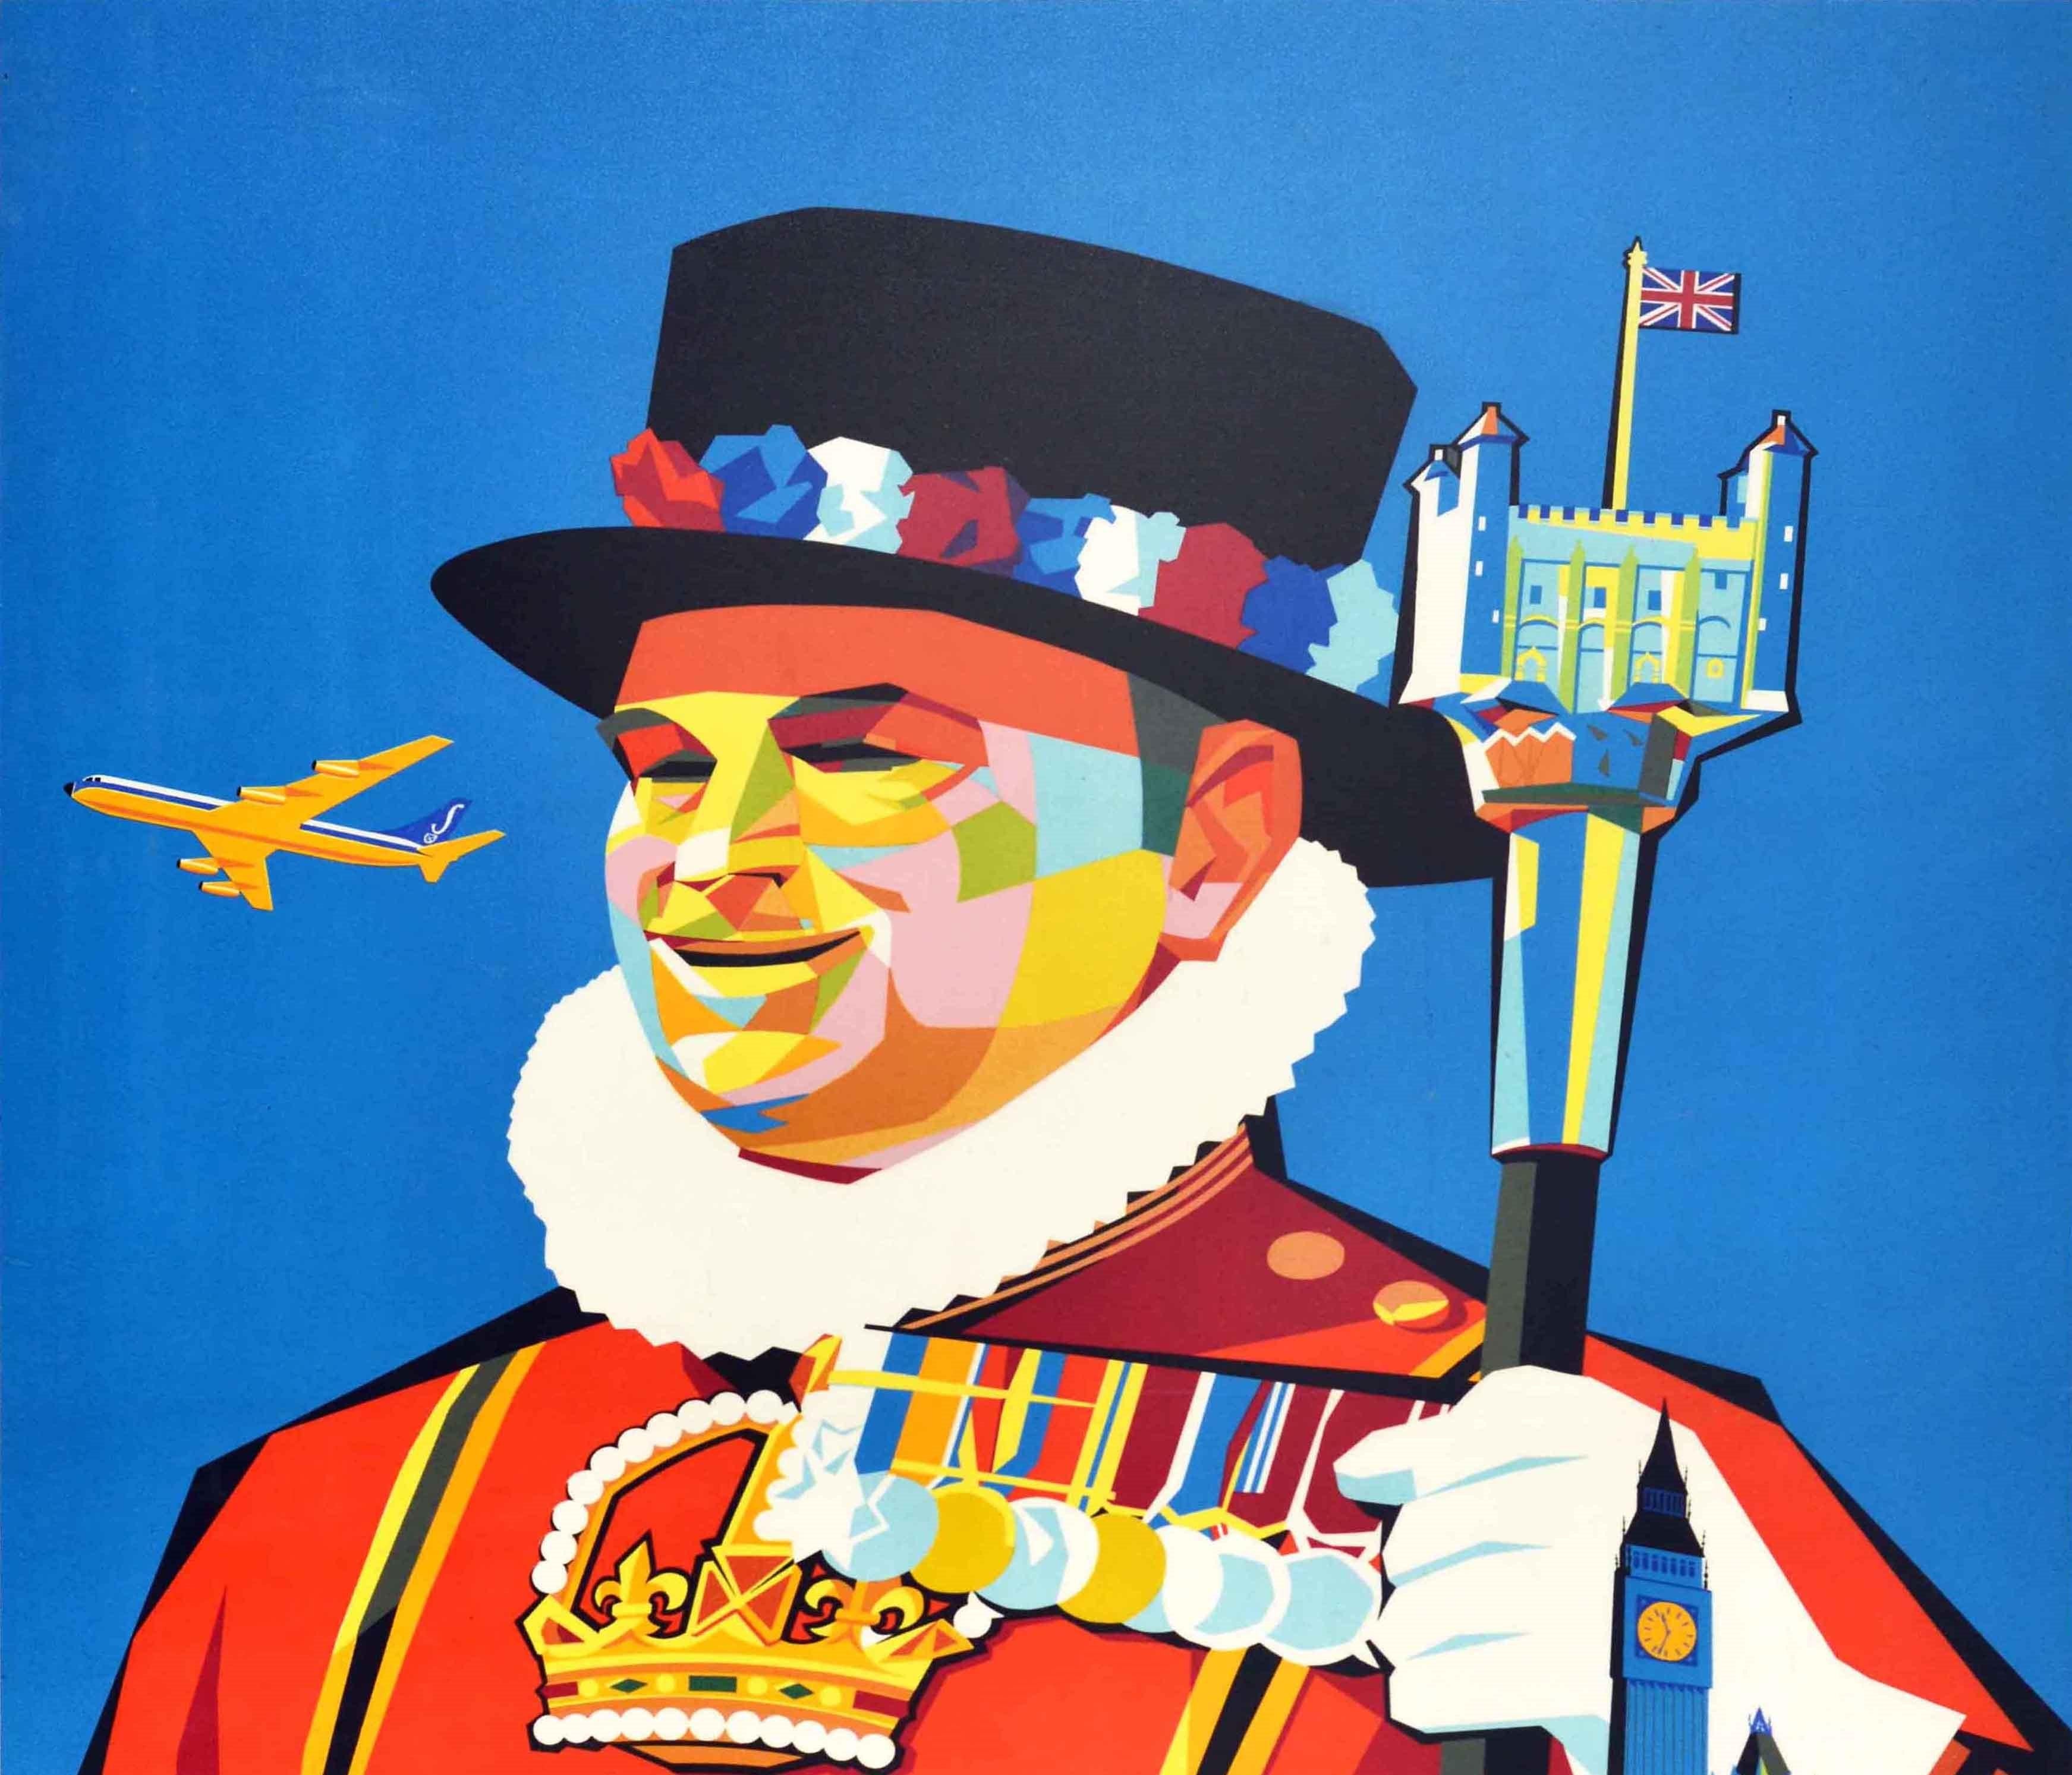 Original Vintage Travel Poster Tower Of London Sabena Airlines Midcentury Design - Print by Gaston van den Eynde